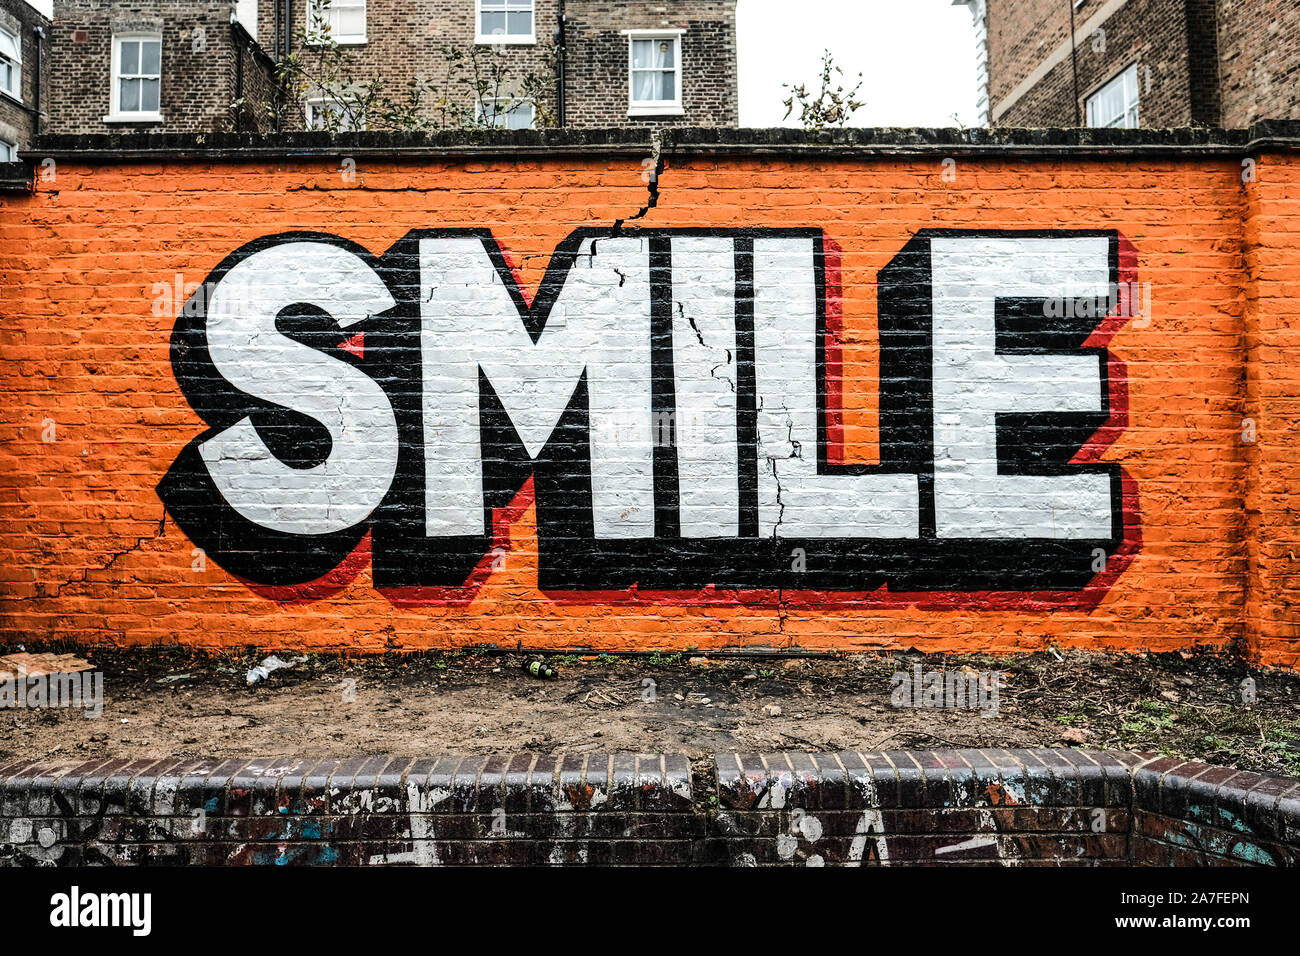 Graffiti sur un mur de brique fissurée à Ladbroke Grove, London.Le message juxtaposées sur la base des environs travaillent bien ensemble Banque D'Images